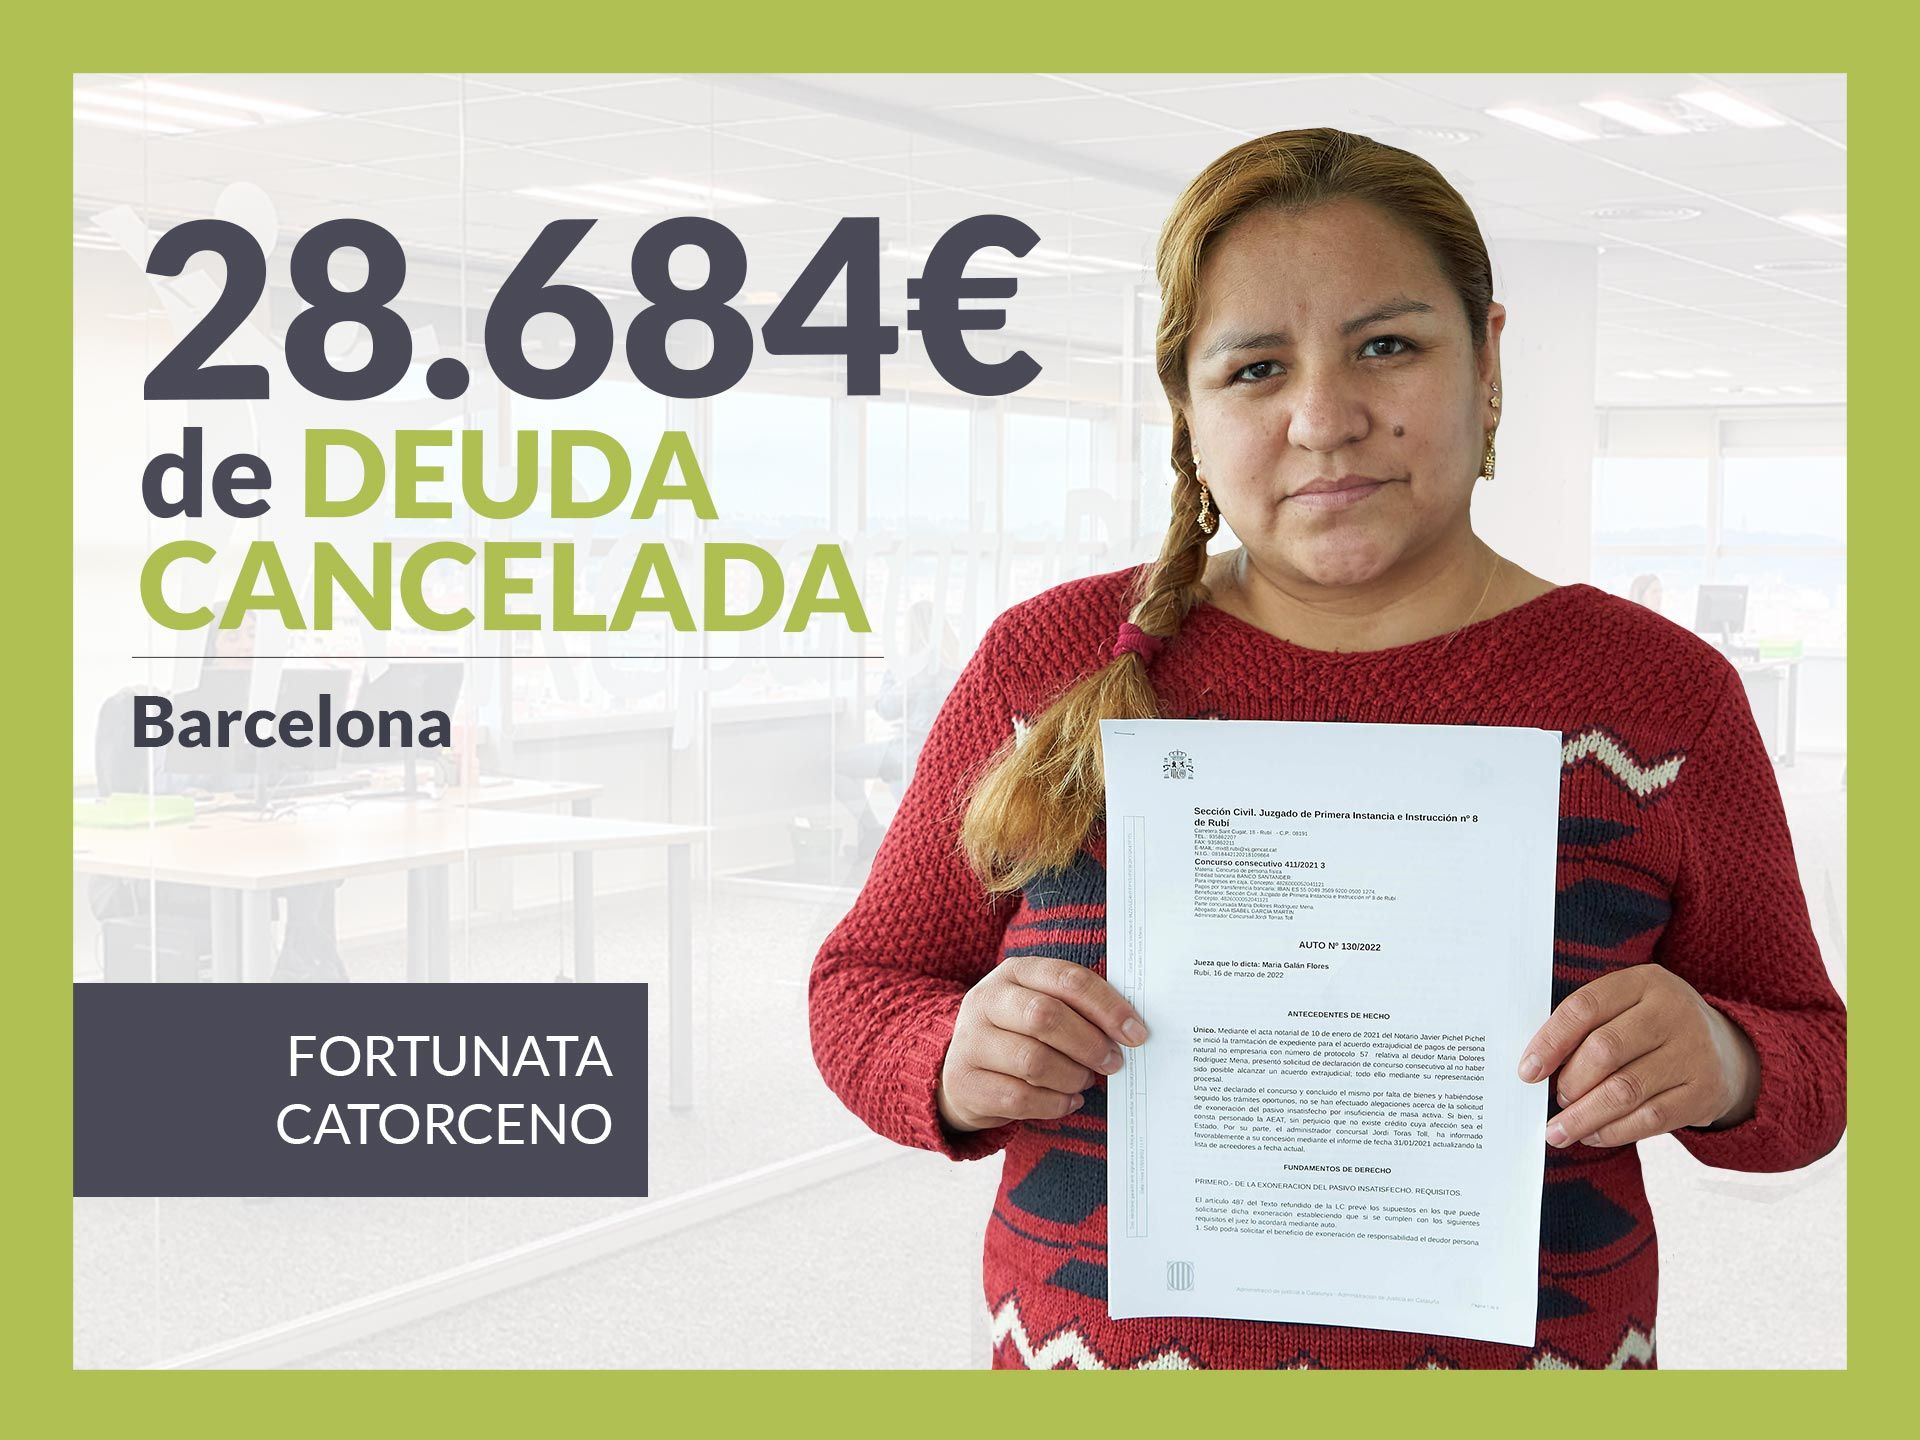 Repara tu Deuda Abogados cancela 28.684? en Barcelona (Catalunya) con la Ley de Segunda Oportunidad